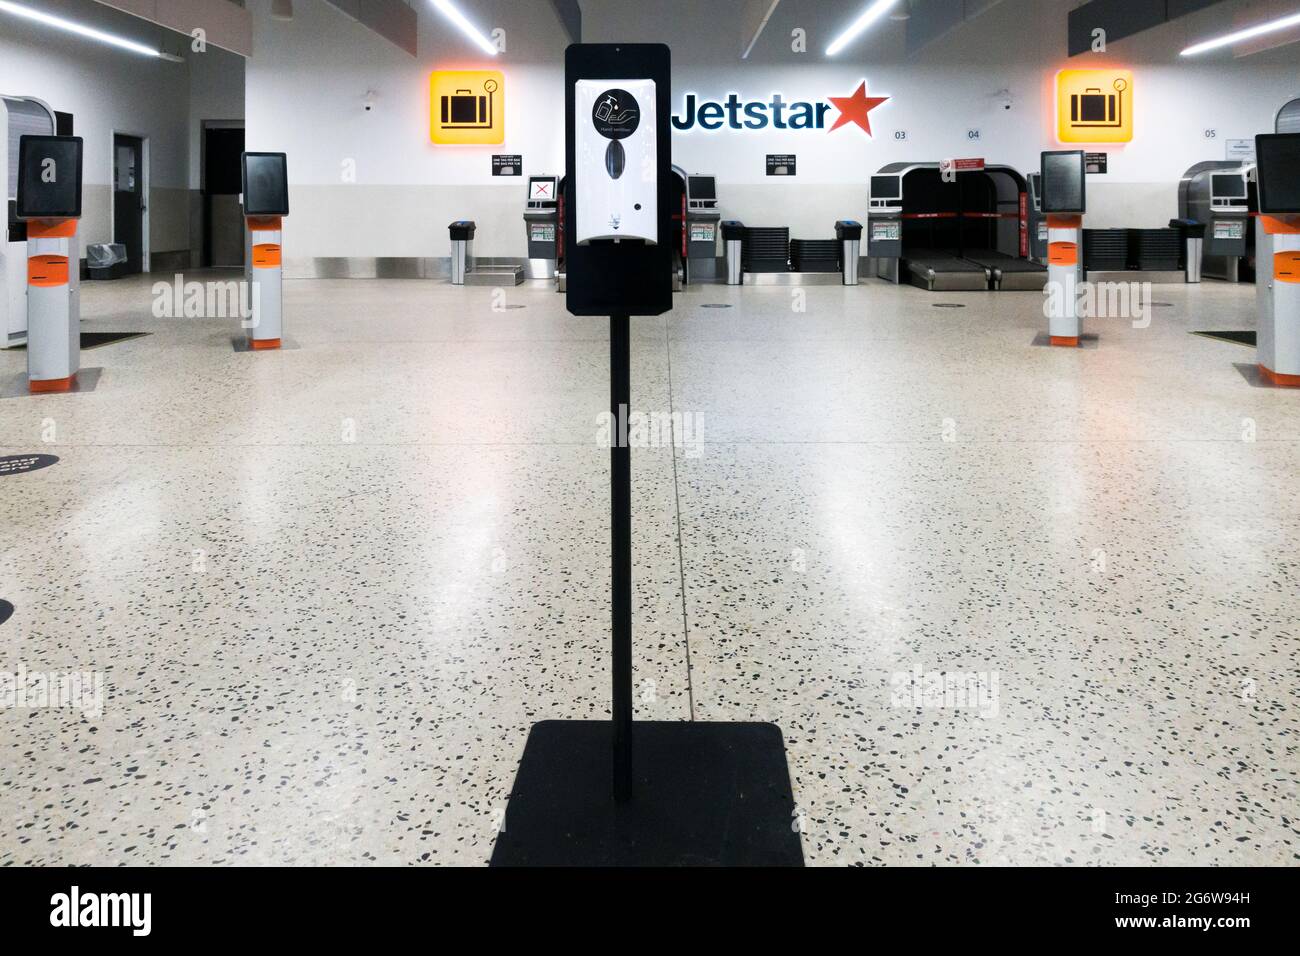 Terminal aérien Jetstar déserté à l'aéroport Tullamarine de Melbourne, en Australie pendant le confinement. Désinfectant pour les mains au premier plan. Banque D'Images